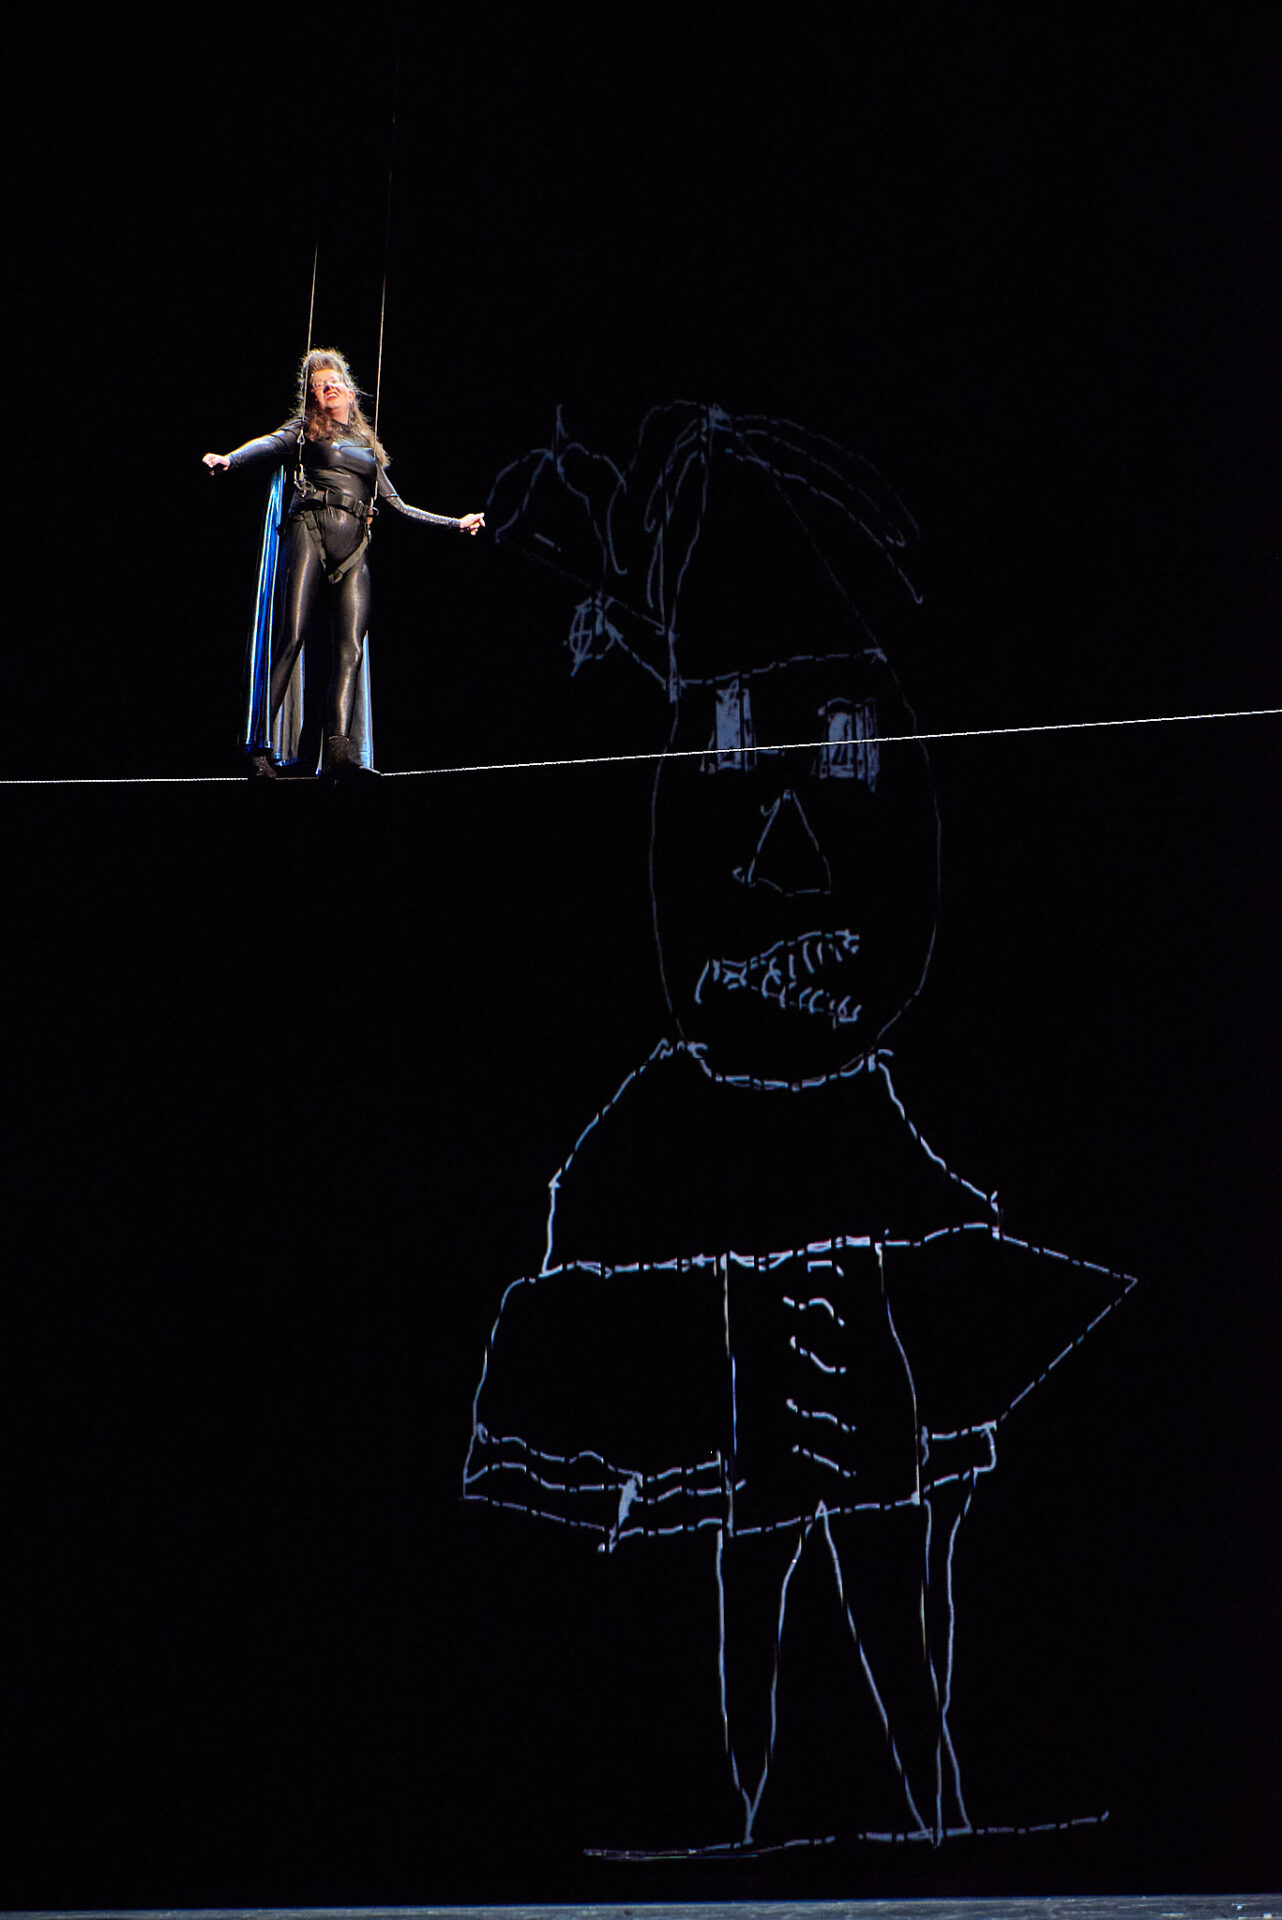 Die Darstellerin steht auf einem Drahtseil und trägt einen Monolog vor. Sie ist mit einem Klettergurt und zwei Seilen gesichert. Sie trägt einen schwarzen Anzug und einen lila Umhang. Es trägt ein Superheldenkostüm mit Umhang. Auf der schwarzen Leinwand im Hintergrund sieht man eine gezeichnete Figur, die auf das Bild "Angelus Novus" von Paul Klee verweist